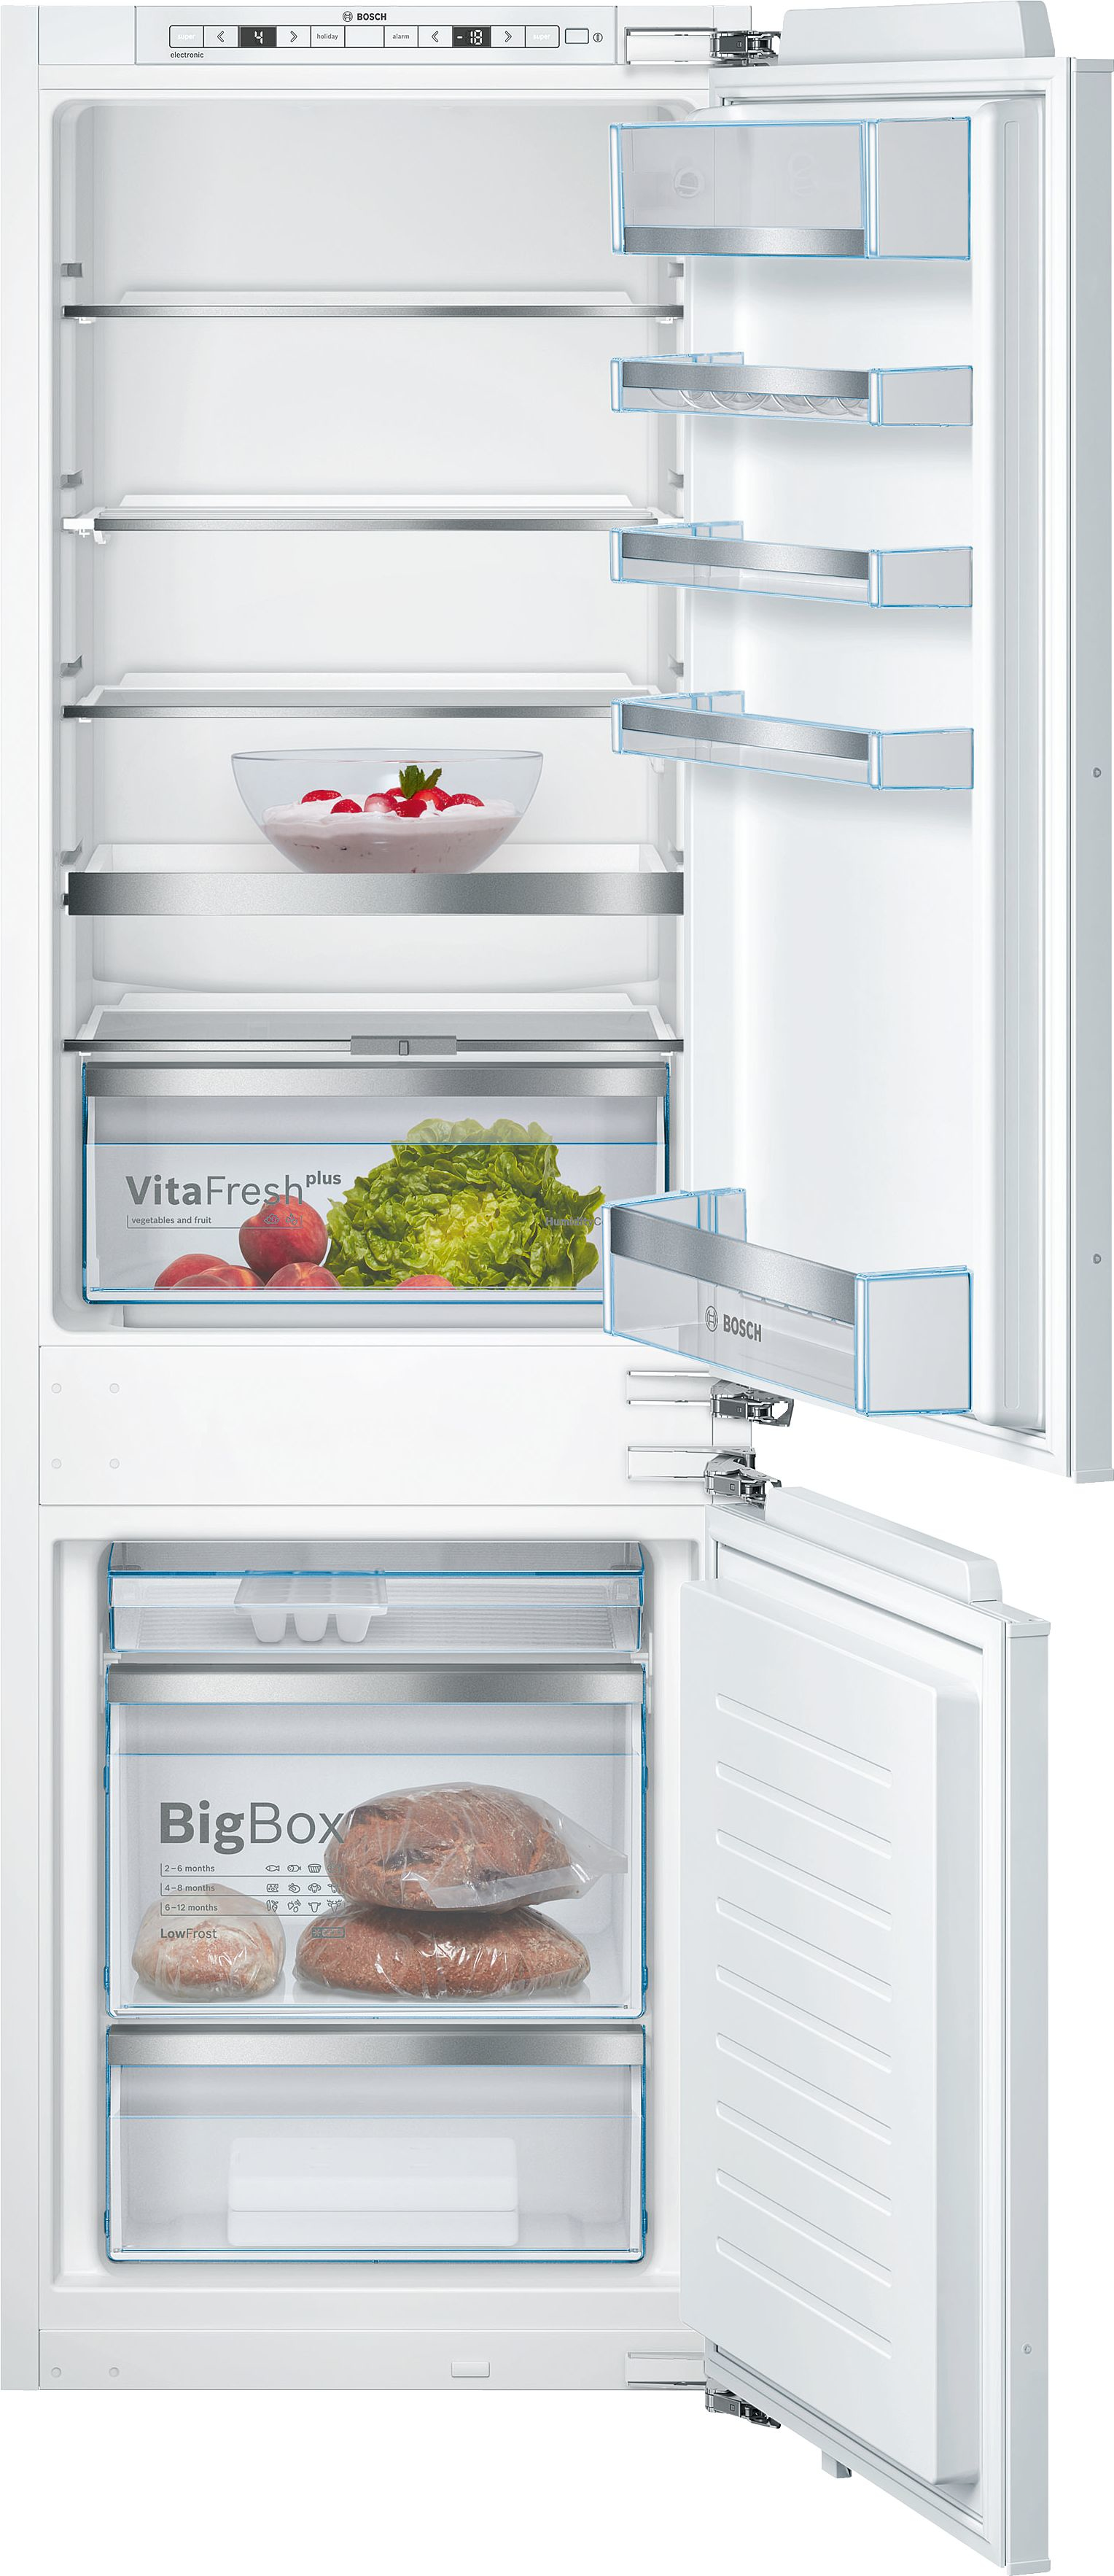 BOSCH : Réfrigérateur combiné Bosch 560L Série 6 en verre noir